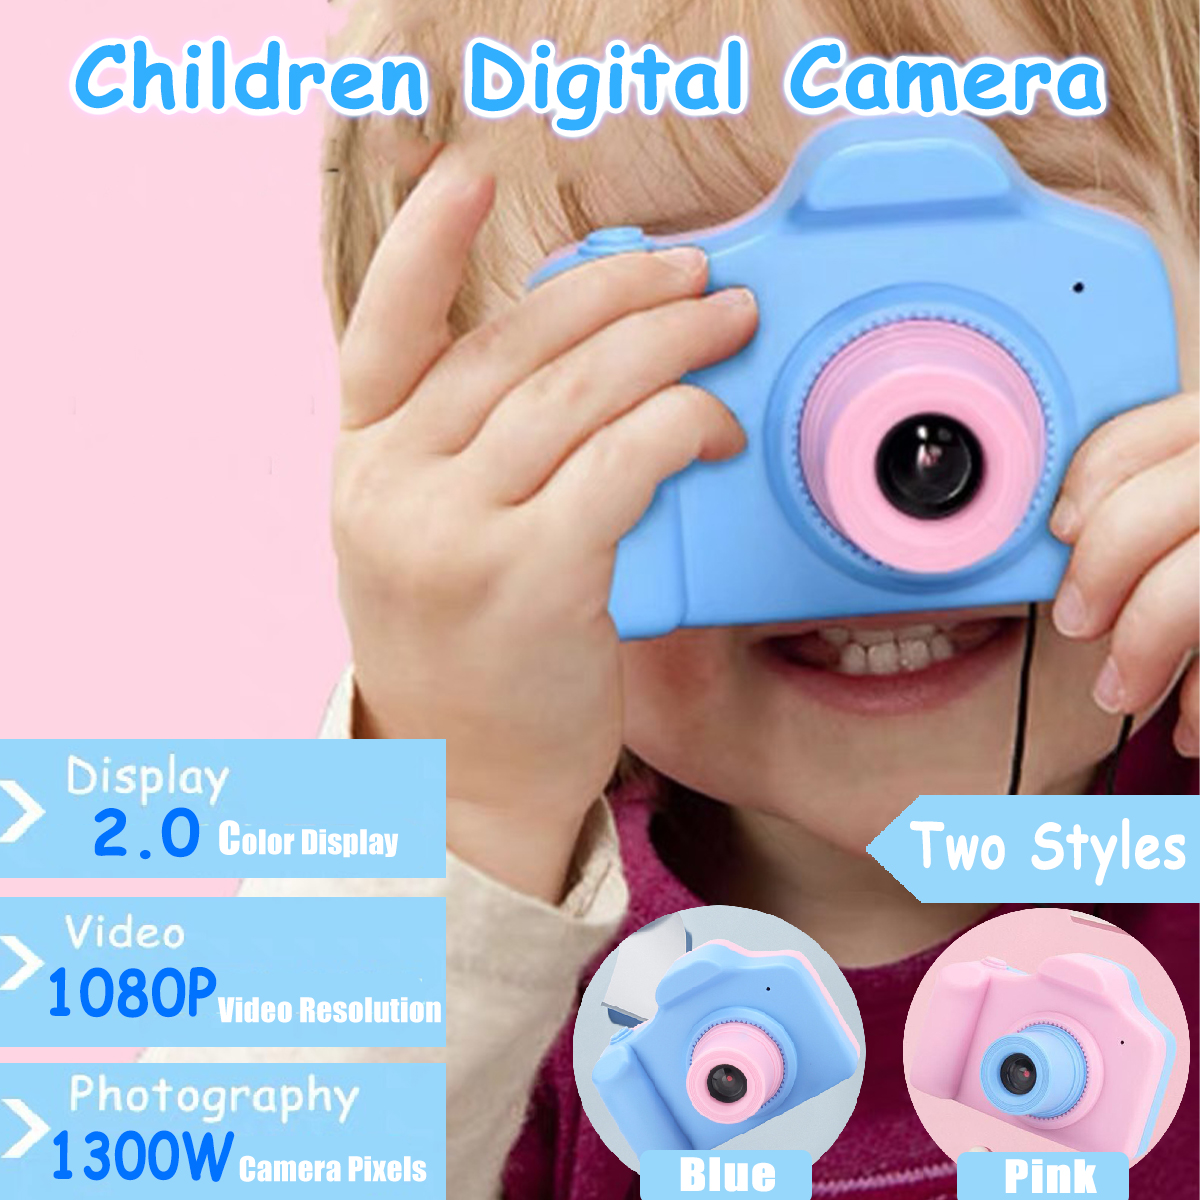 1300W-Pixels-1080P-Mini-Digital-Camera-20-Inch-LCD-Screen-Support-32GB-SD-Card-1594366-1